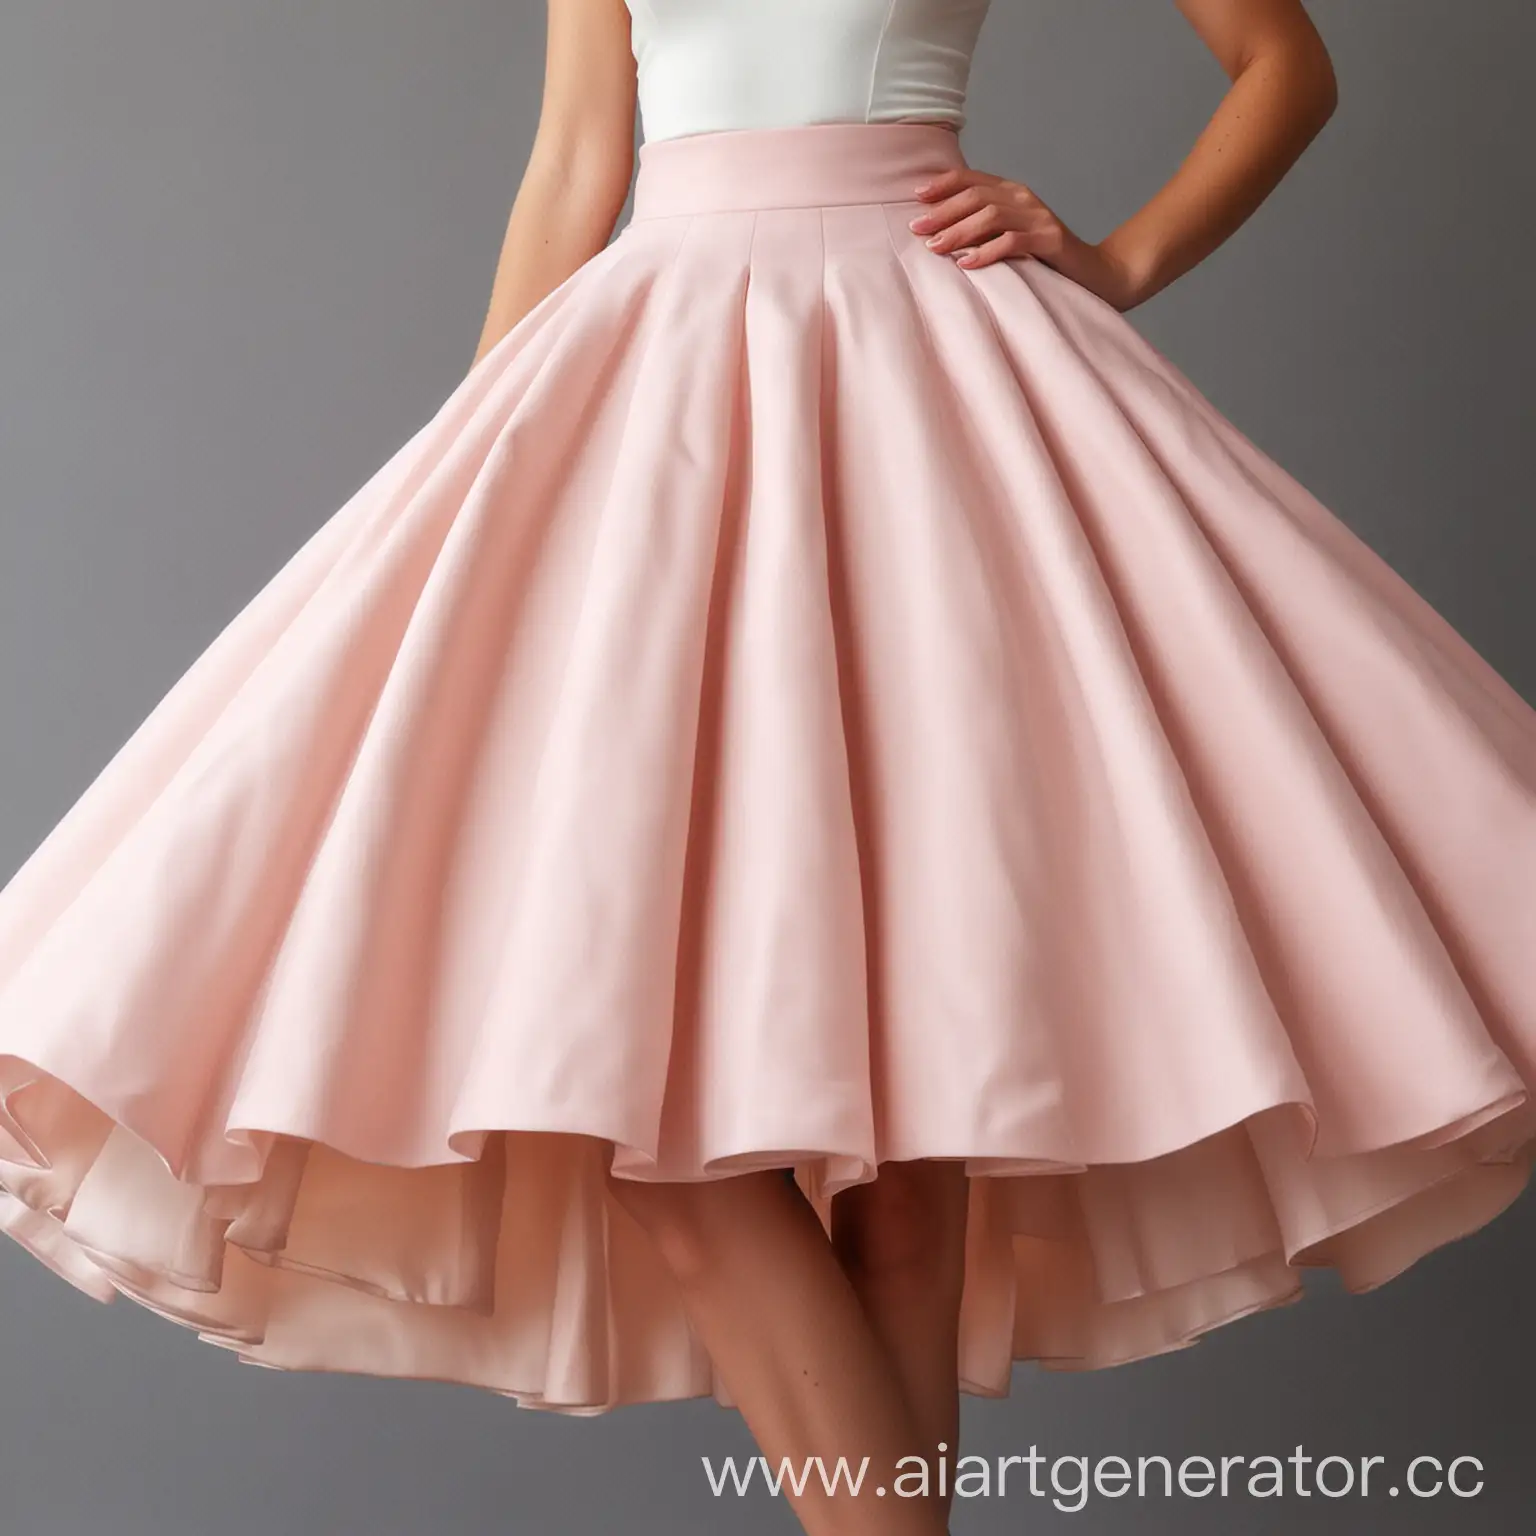 Graceful-Dancer-Under-a-Magnificent-Skirt